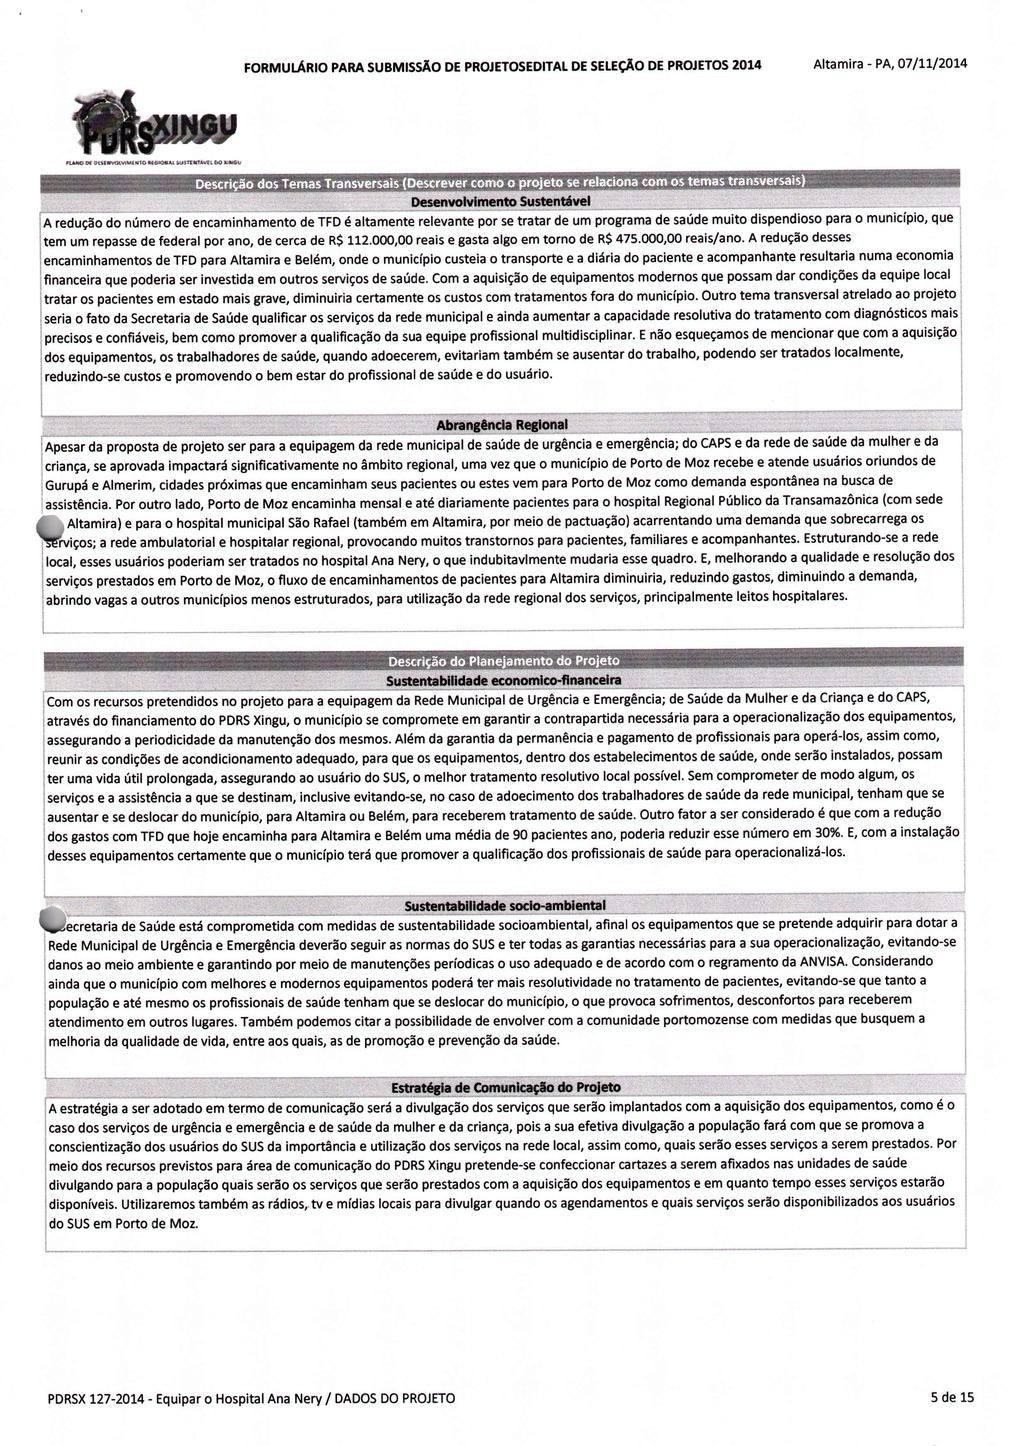 FORMULÁRIO A redução do número de encaminhamento PARA SUBMISSÃO Altamira - PA, 07/11/2014 DE PROJETOSEDITAL DE SELEÇÃO DE PROJETOS 2014 de TFD é altamente relevante por se tratar de um programa de